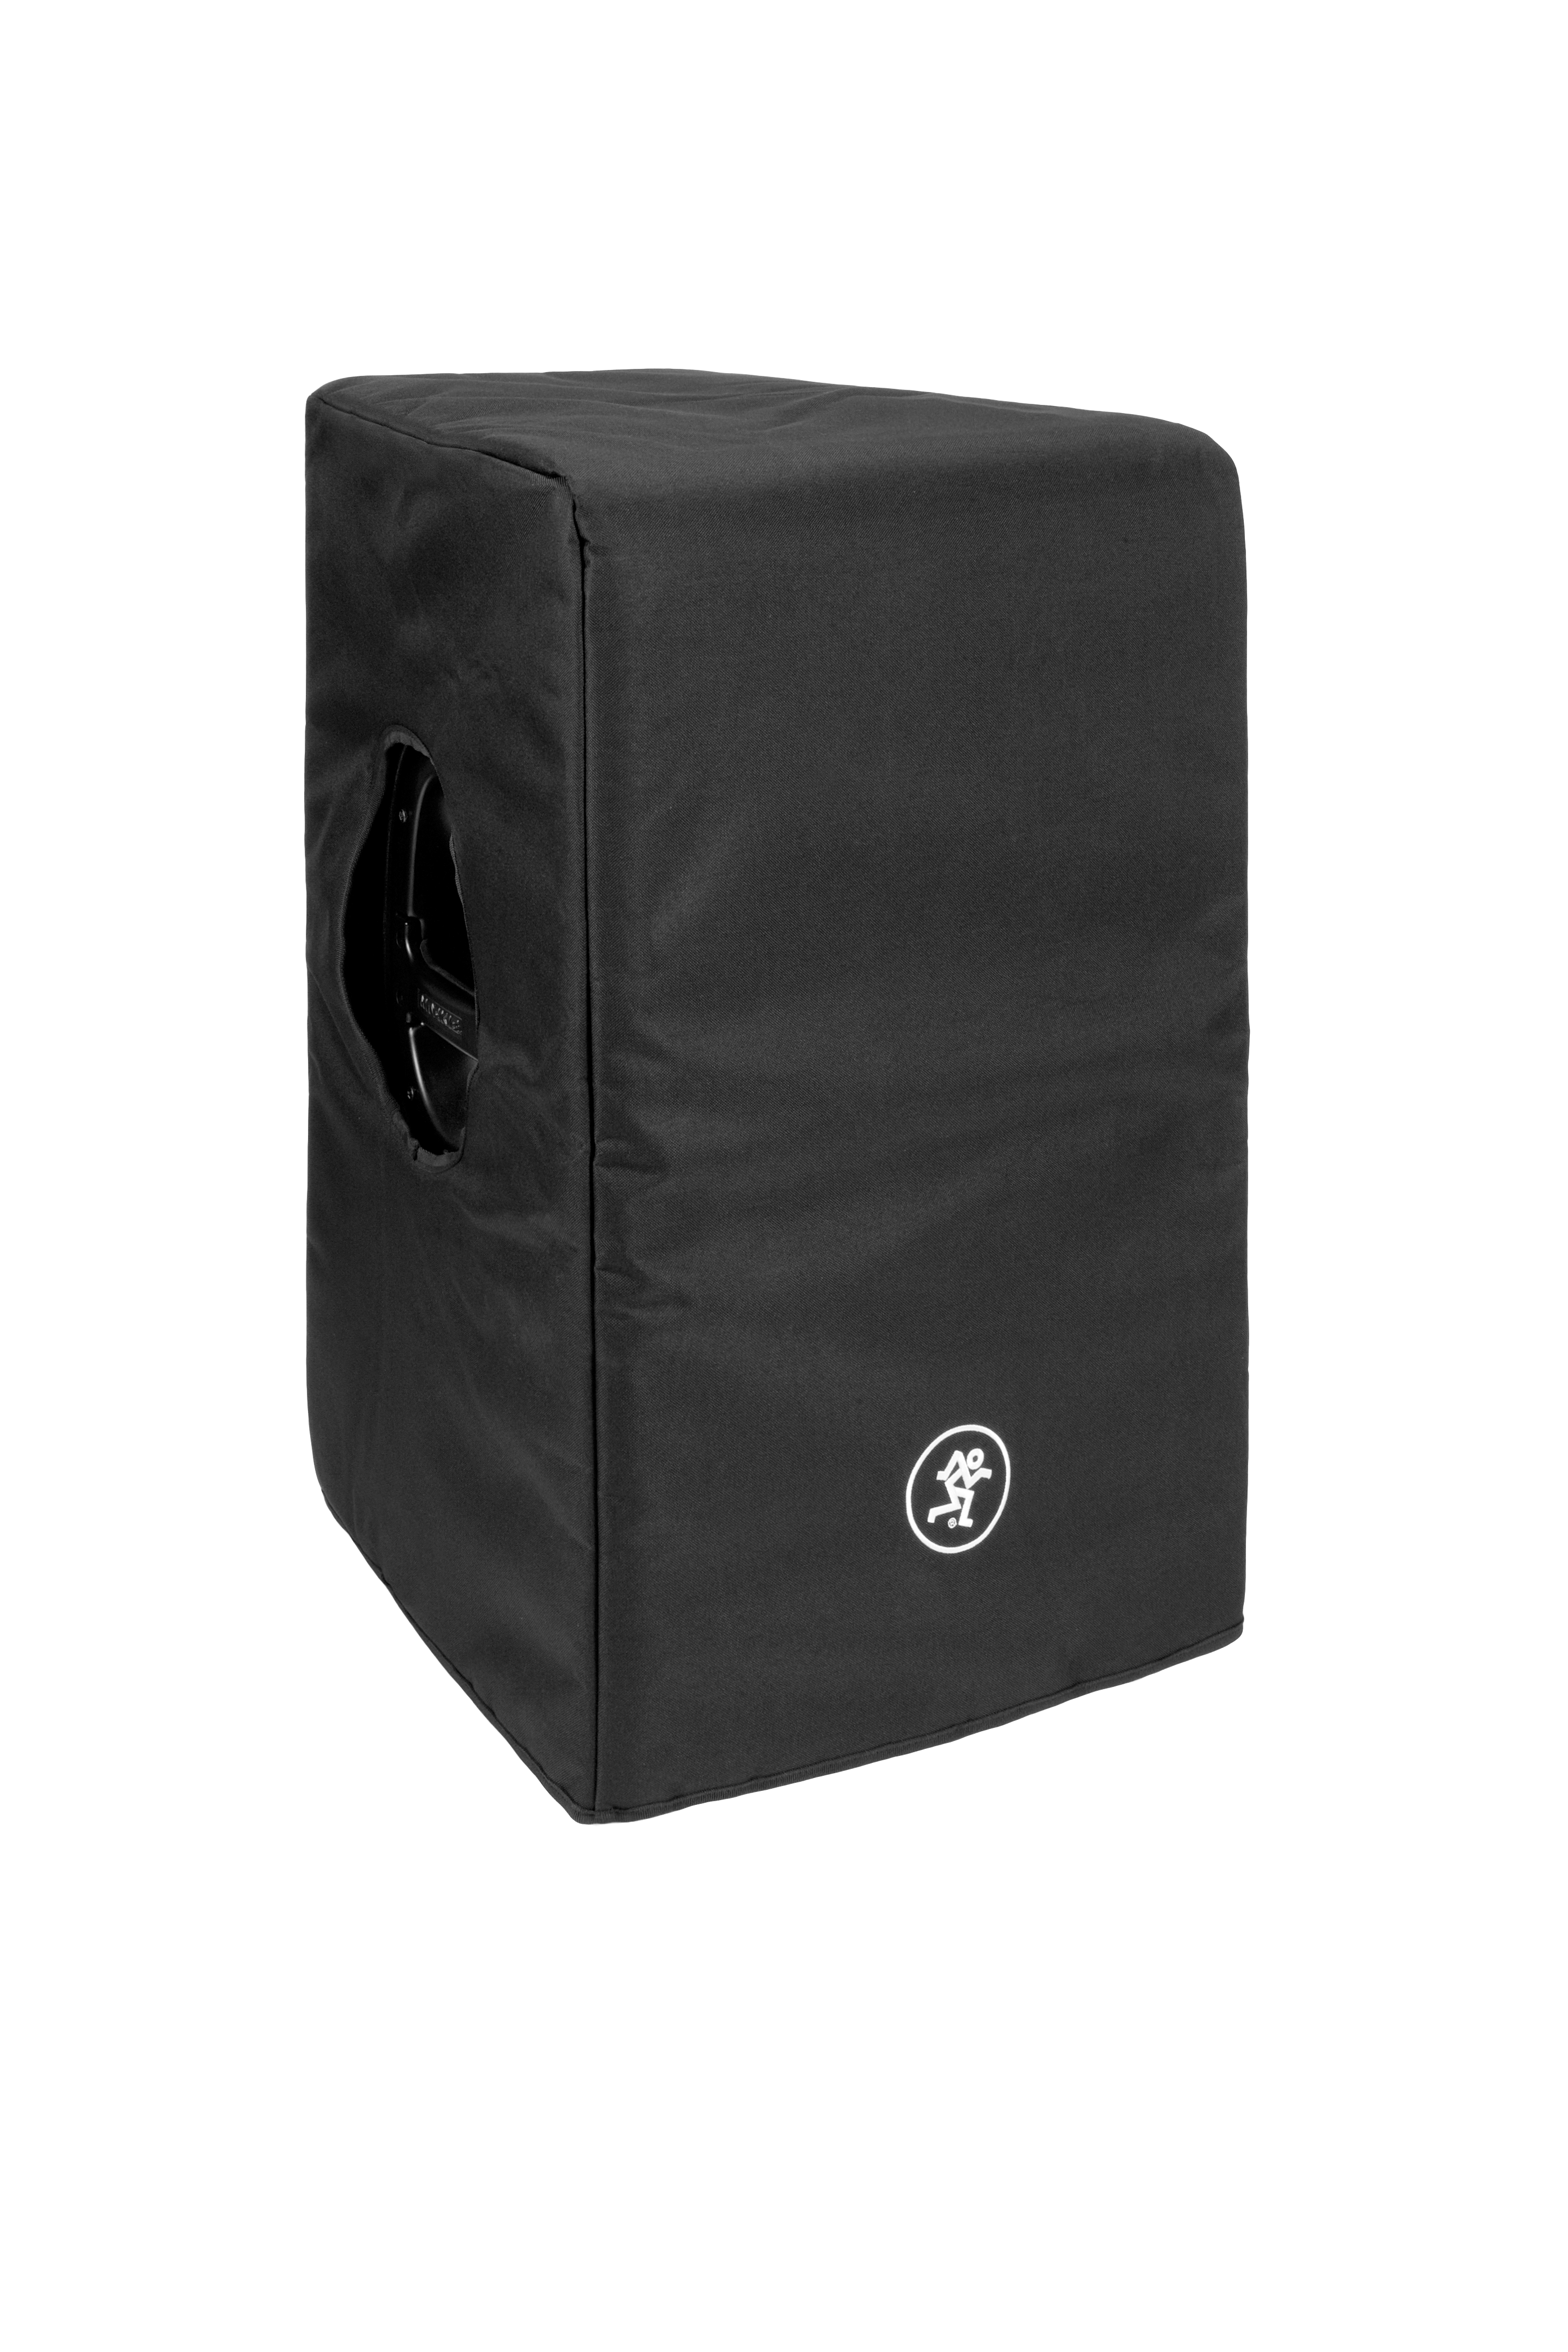 Mackie Speaker Cover for DRM215 / DRM215-P Loudspeaker